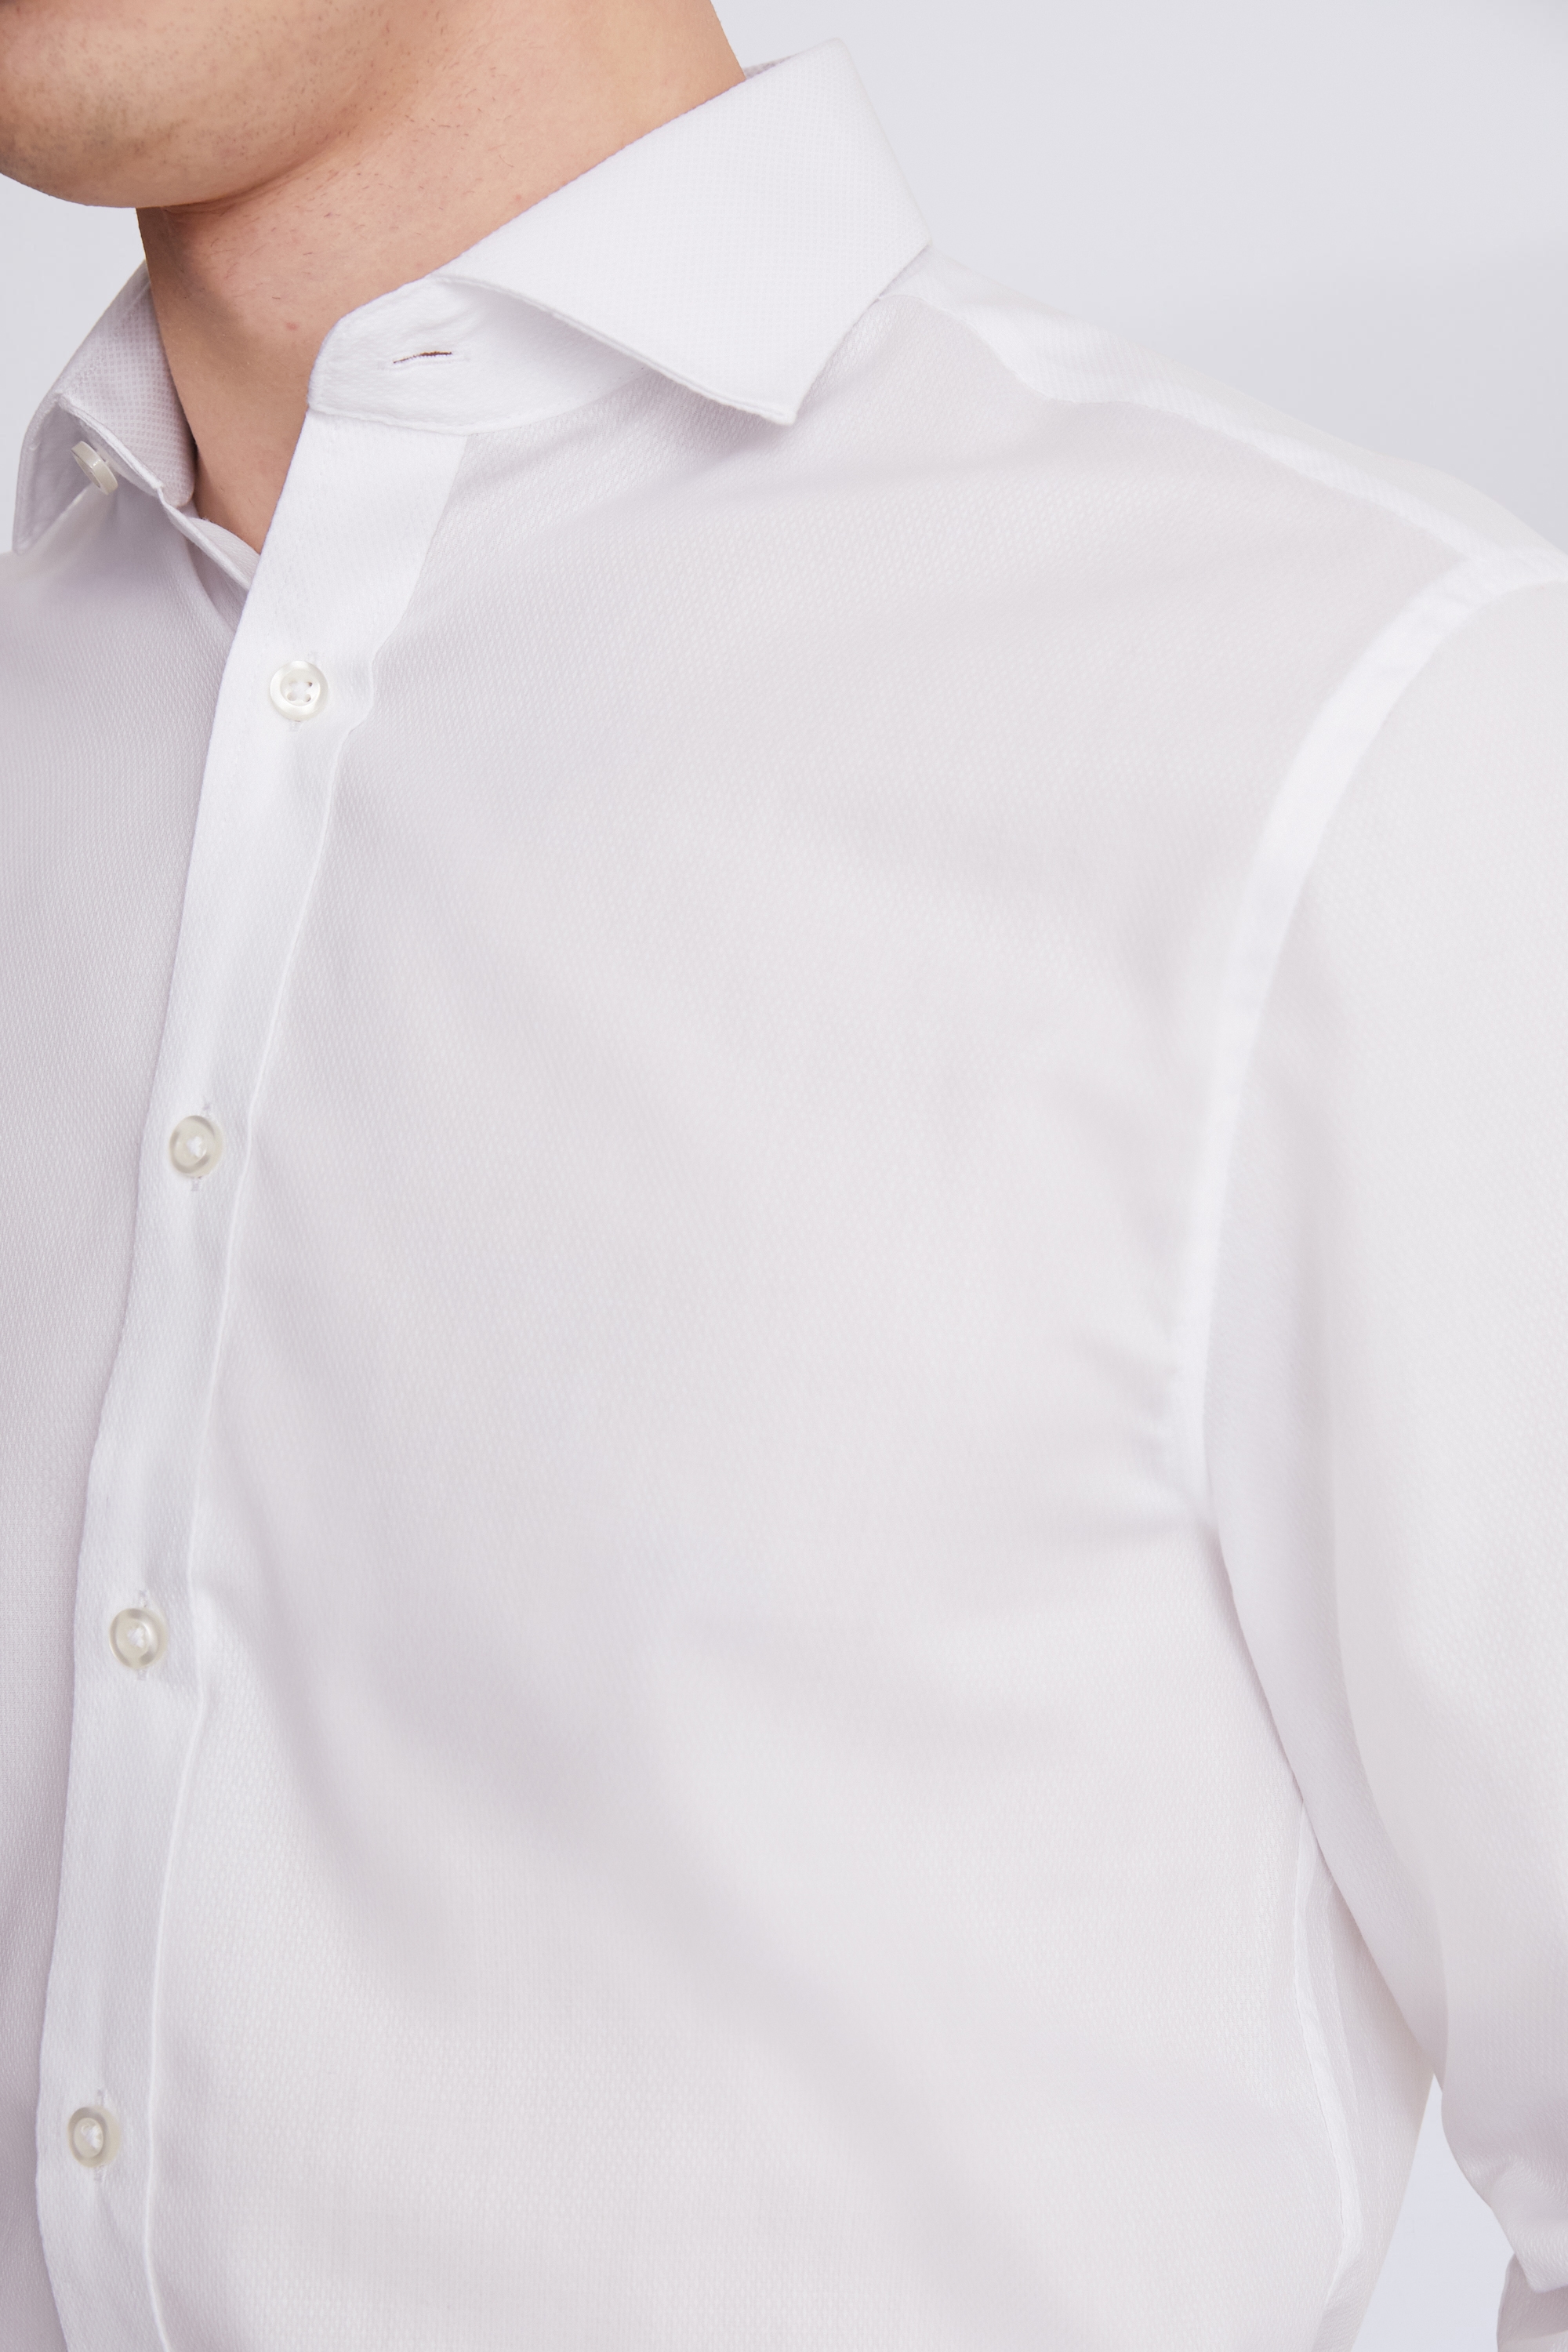 Regular Fit White Dobby Shirt | Buy Online at Moss